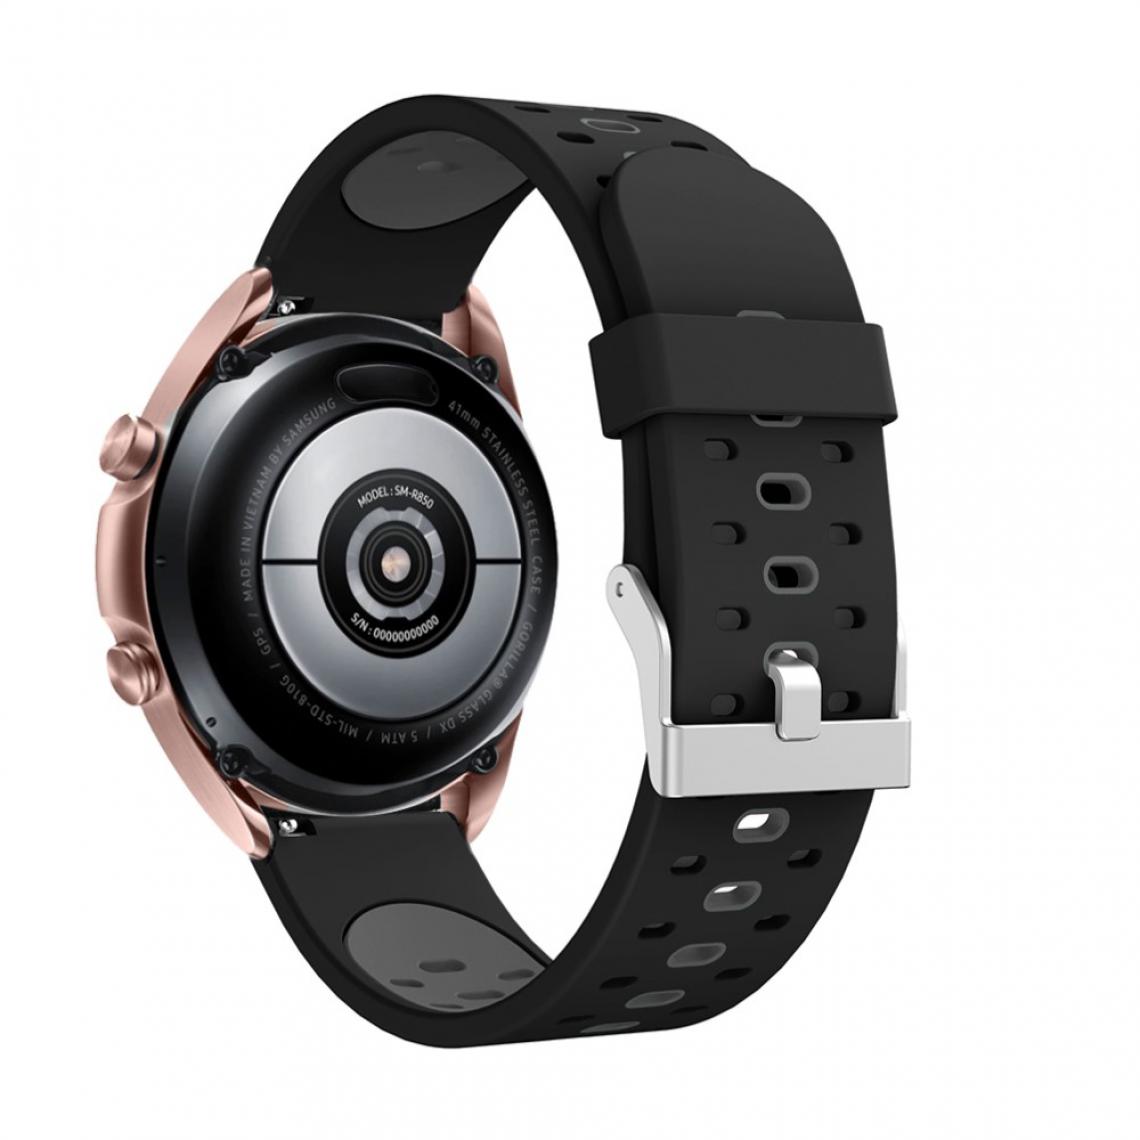 Other - Bracelet en silicone 20 mm bicolore noir/gris pour votre Samsung Galaxy Watch3 41mm - Accessoires bracelet connecté